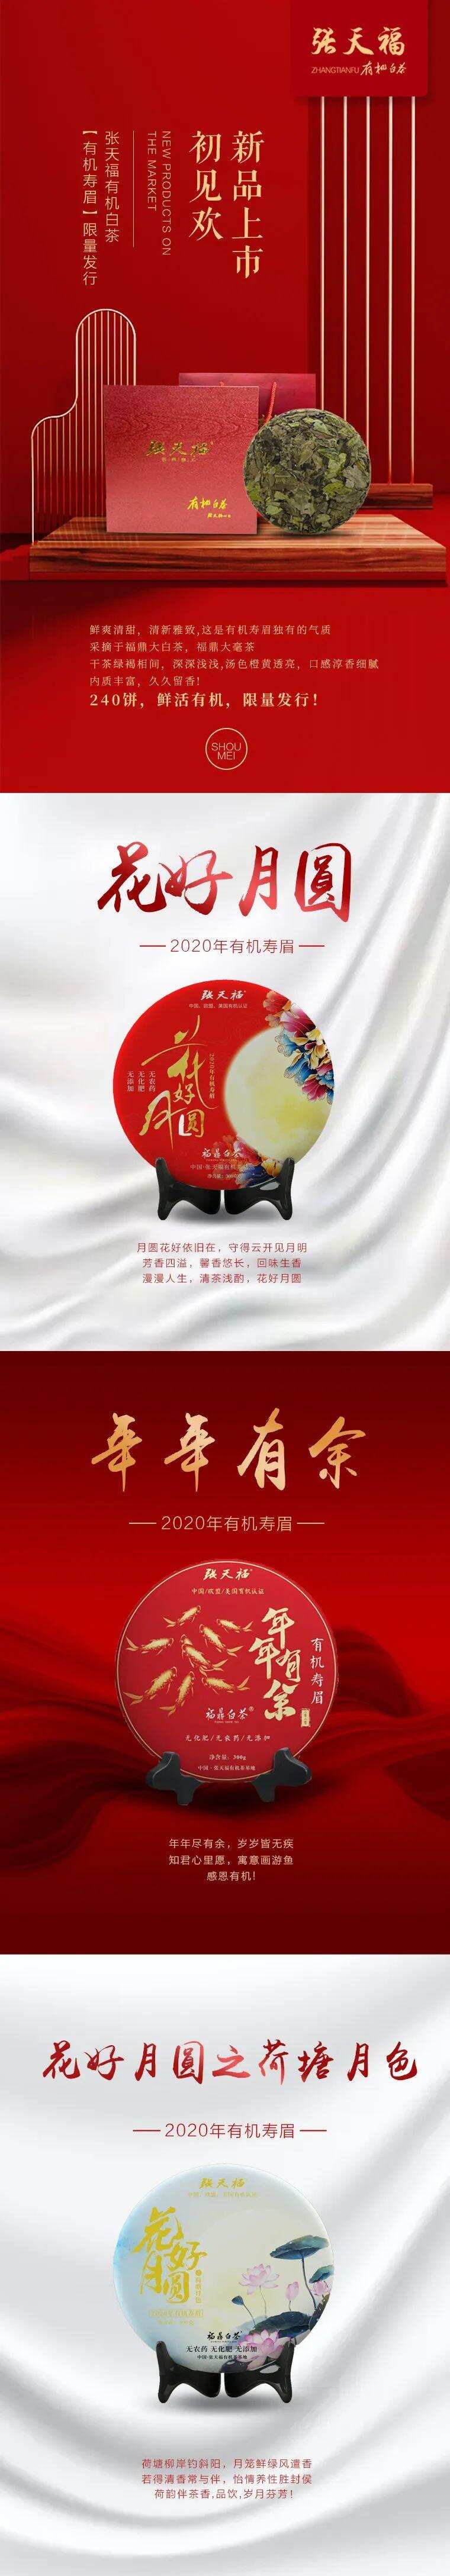 2020张天福有机白茶 新品上市初见欢「有机寿眉」限量发行